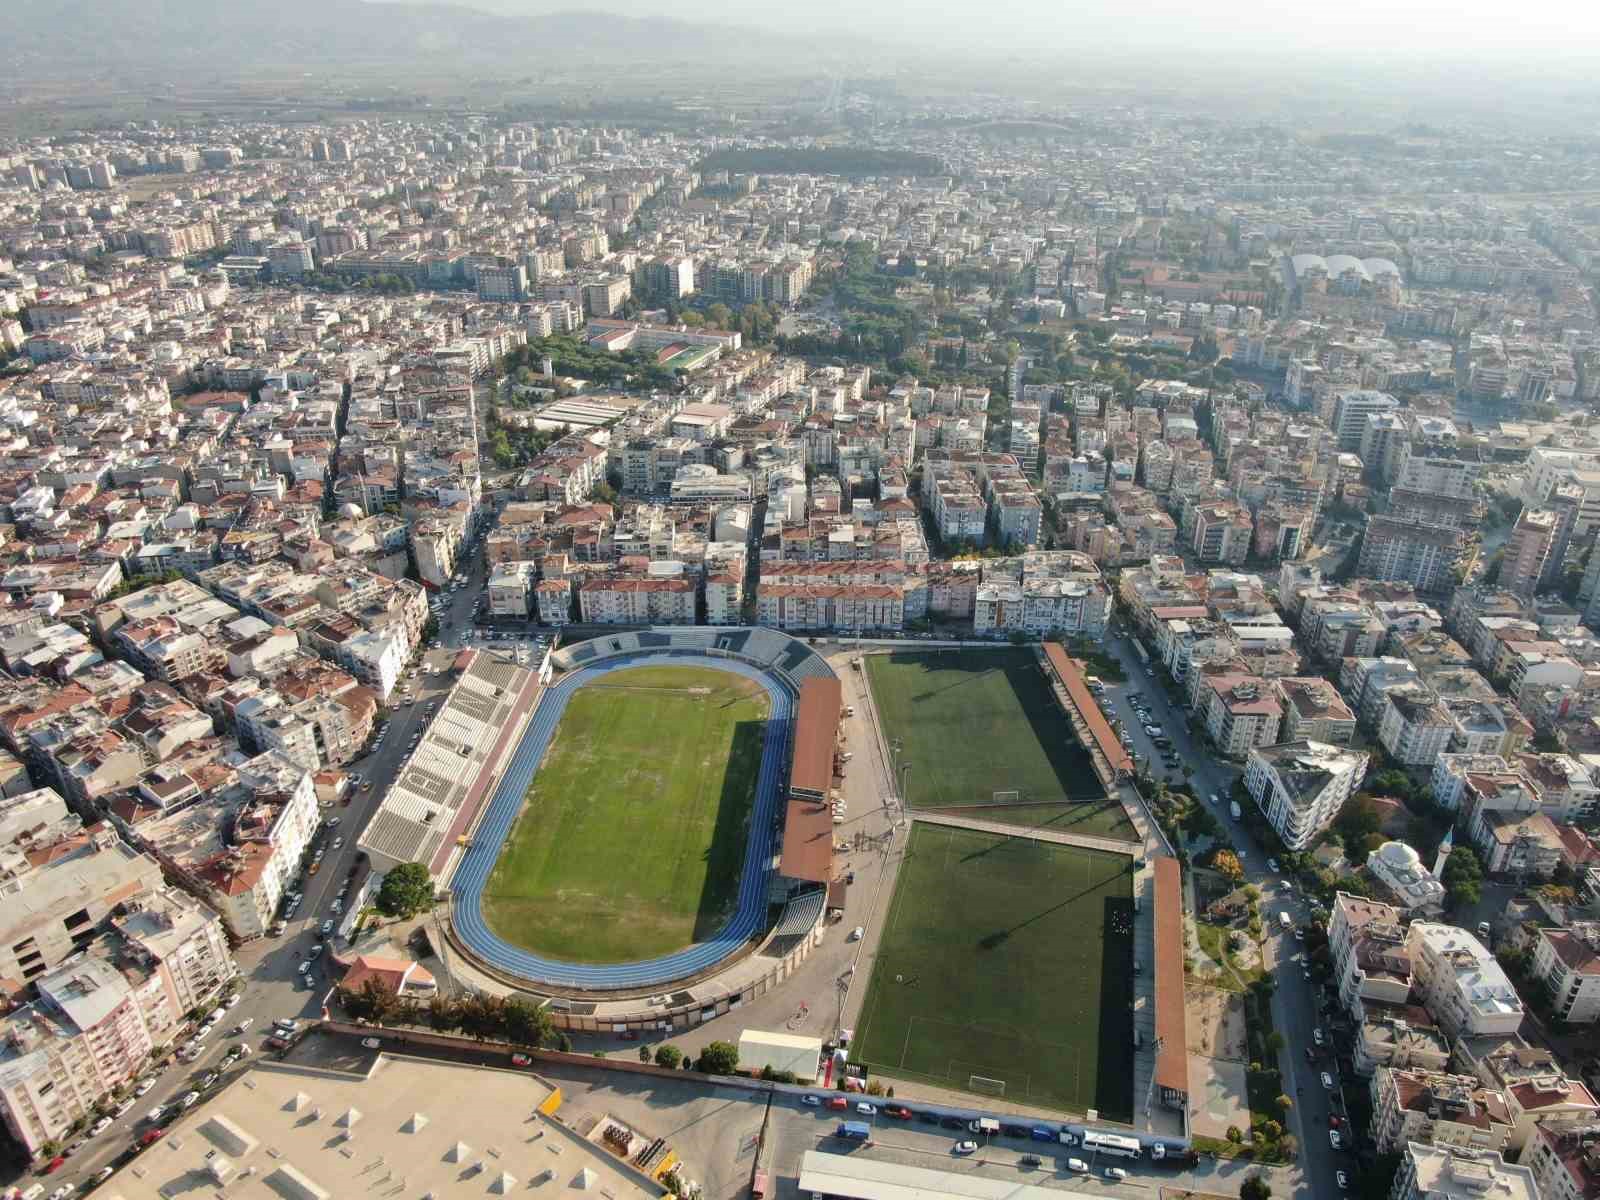 Yeni stadyum projesi Bakanlık onayı bekliyor